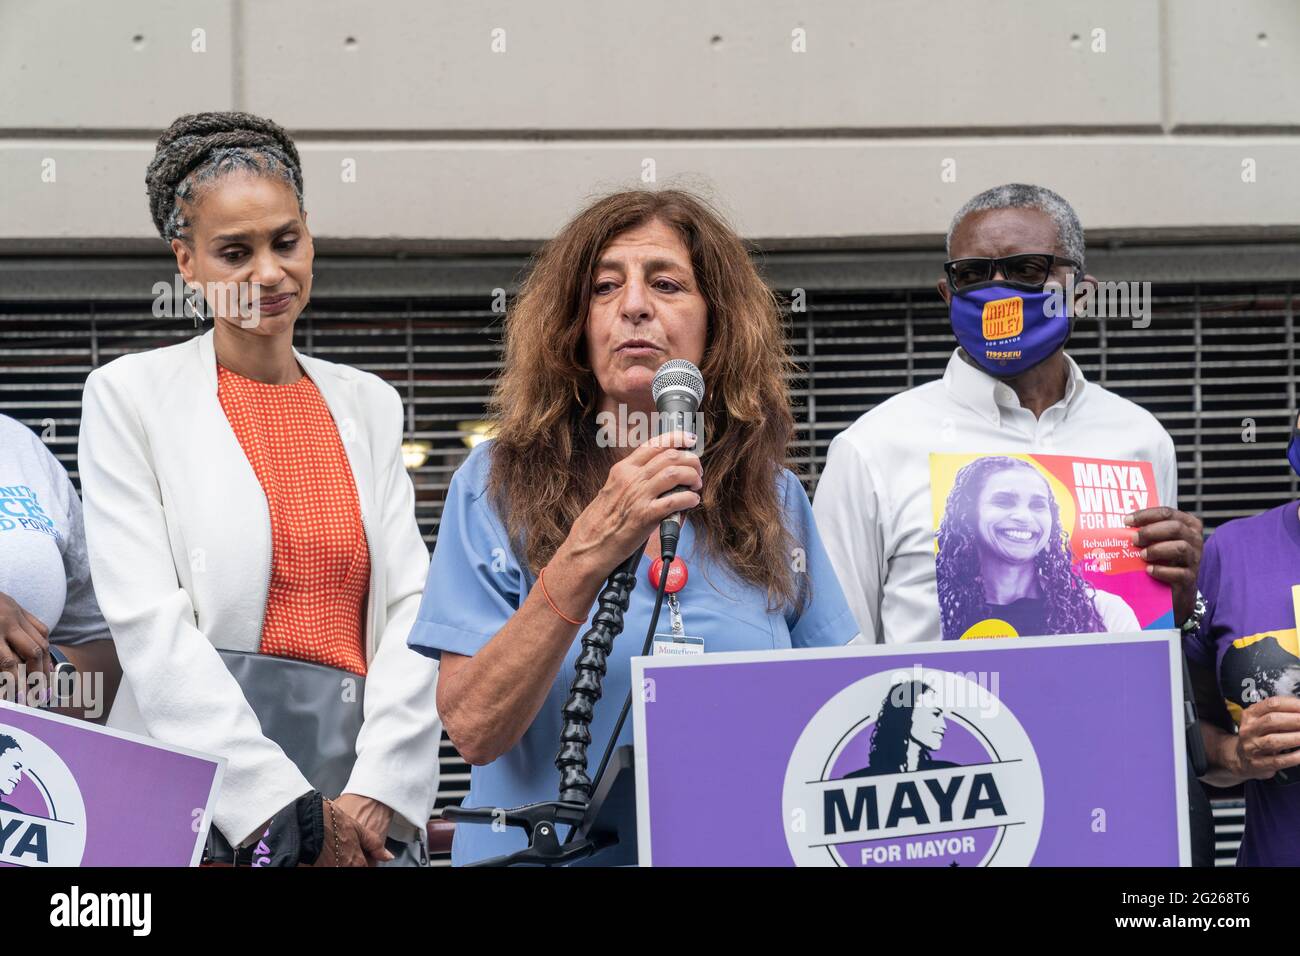 New York, NY - 8. Juni 2021: Judy Sheridan-Gonzalez spricht vor der bürgermeisterlichen Kandidatin Maya Wiley, die den Universal Health Coverage Plan im Montefiore Medical Center in der Bronx bekannt gab Stockfoto